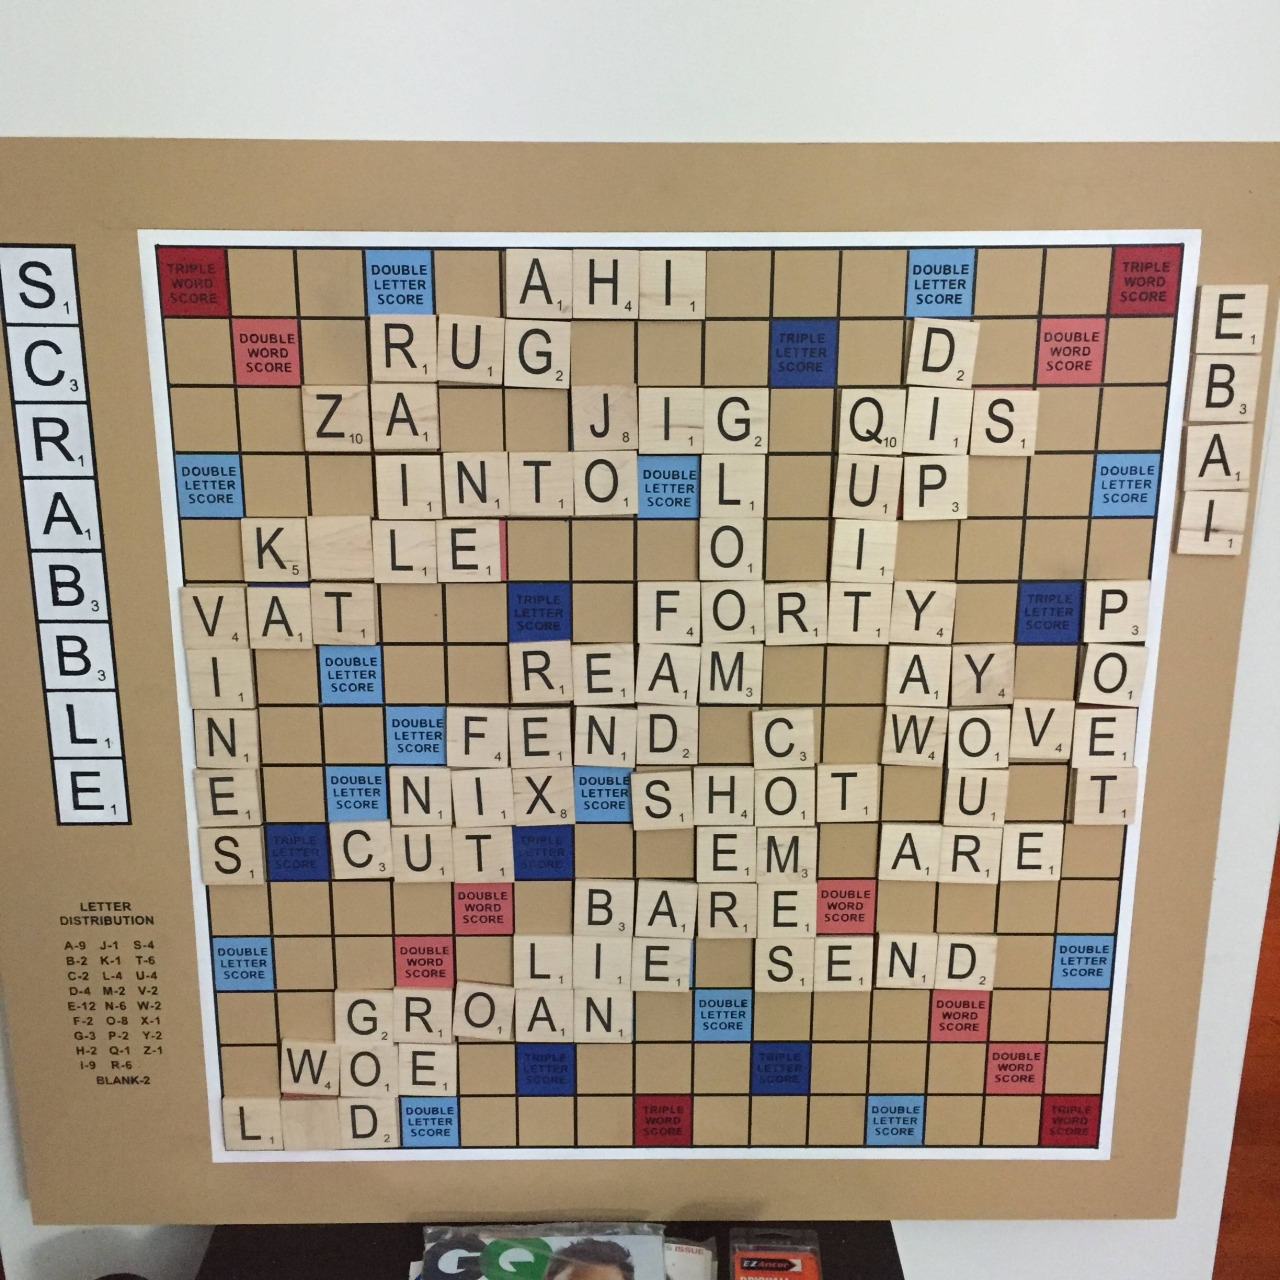 Óriási mágneses táblán még királyabb a Scrabble